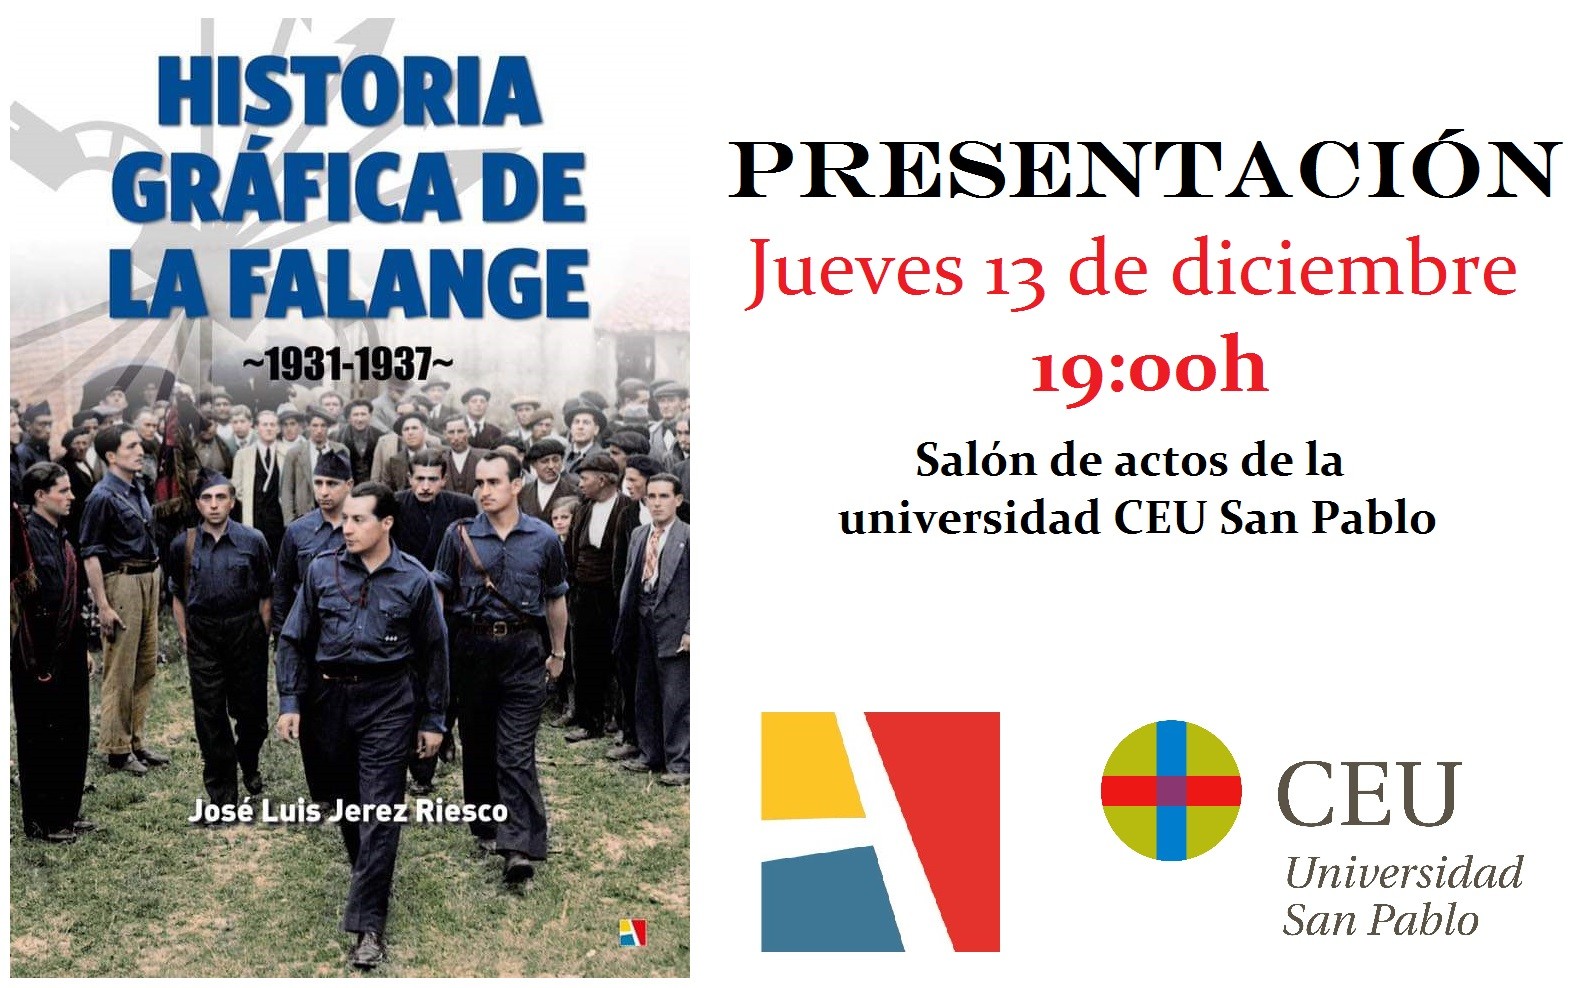 Jueves 13-dic: Presentación de “Historia Gráfica de la Falange 1931-1937” en la Universidad CEU San Pablo